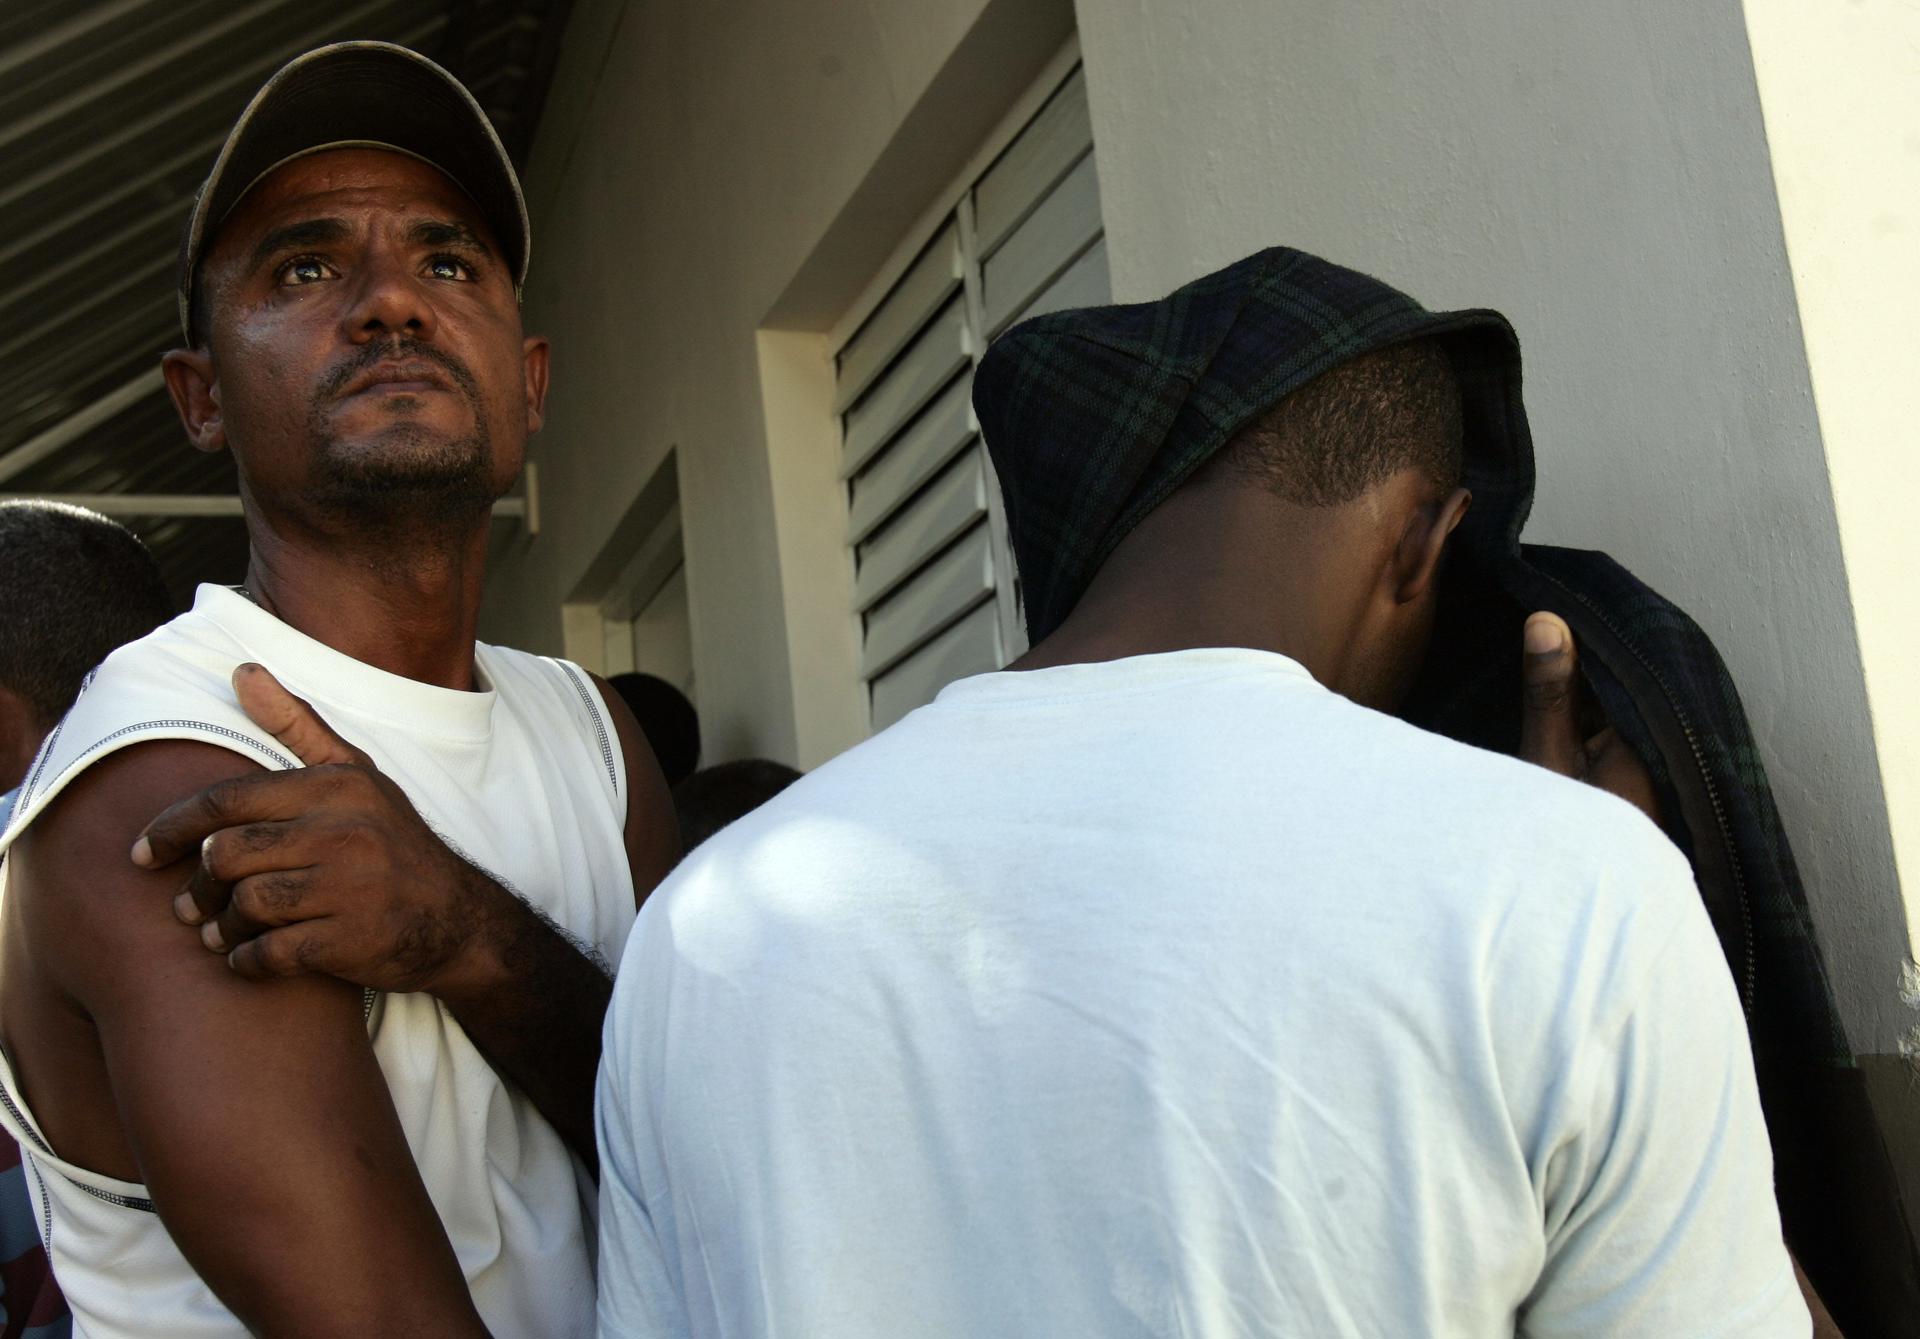 Un grupo de 14 migrantes, 13 hombres y un menor, de nacionalidad desconocida, fue detenido este martes en Puerto Rico al llegar de manera ilegal por la costa noroeste de la isla caribeña, informó la Policía local. Fotografía de archivo. EFE/Orlando Barría